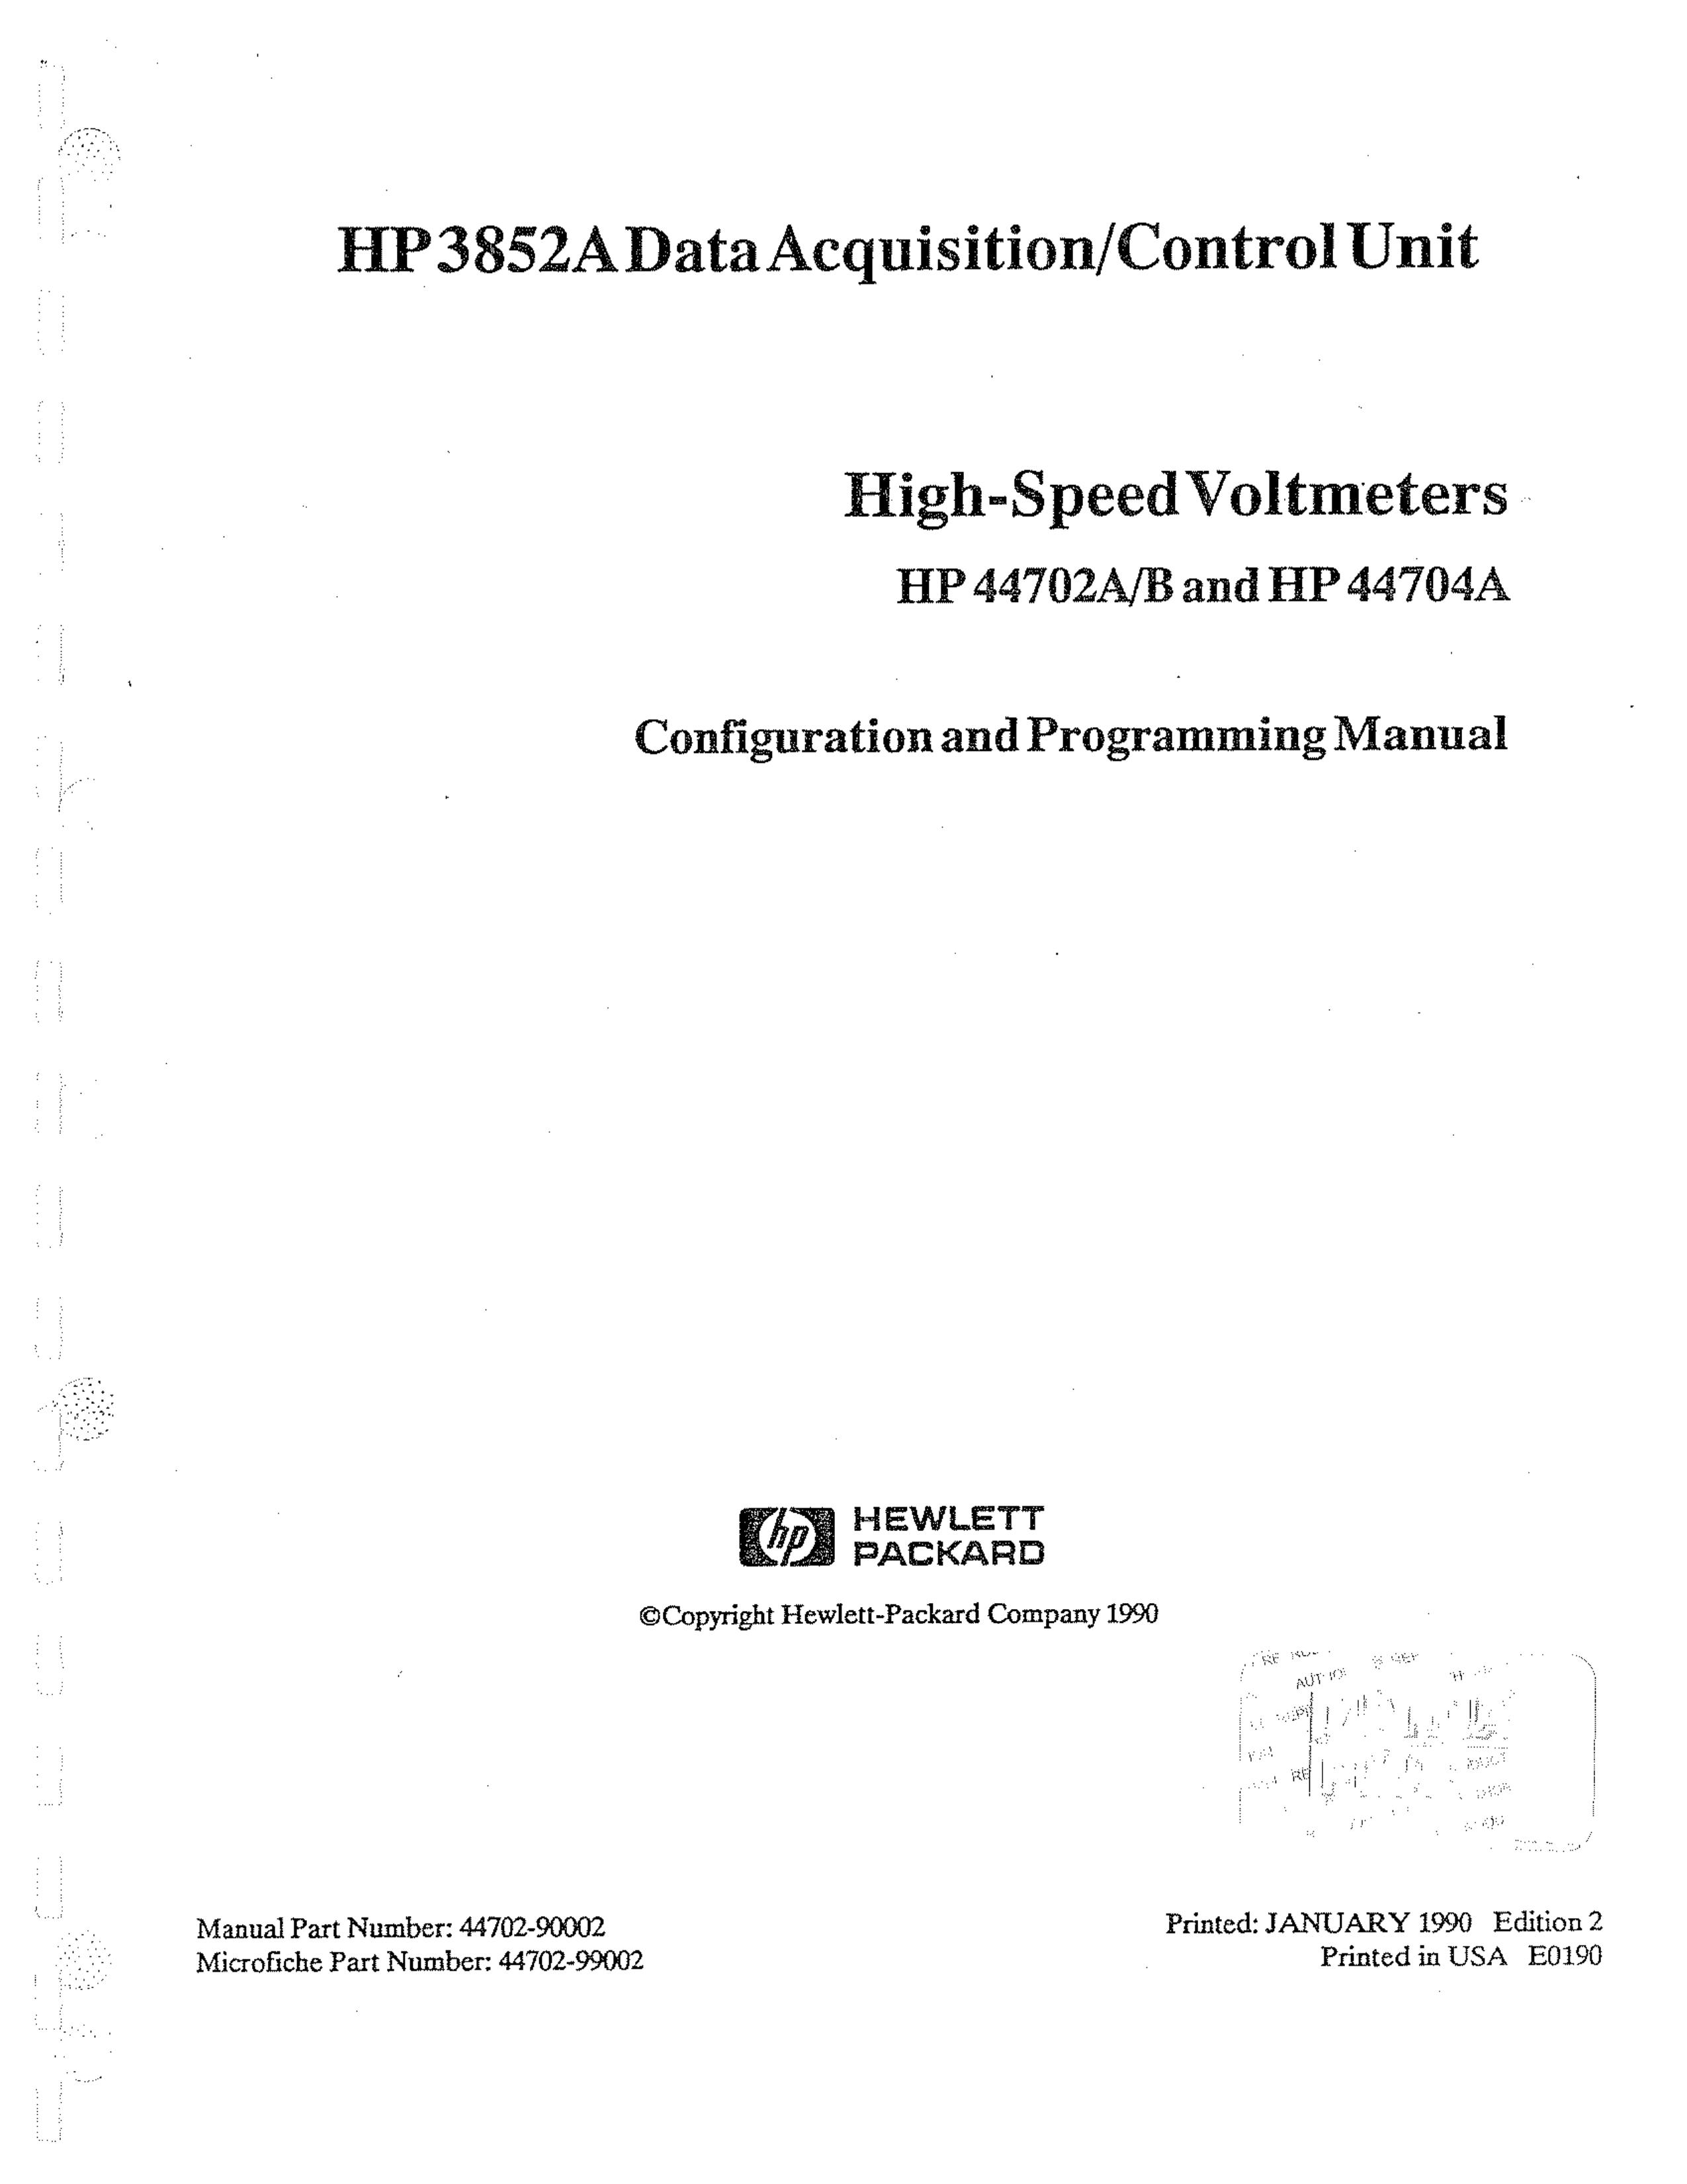 HP (Hewlett-Packard) HP44704A Landscape Lighting User Manual